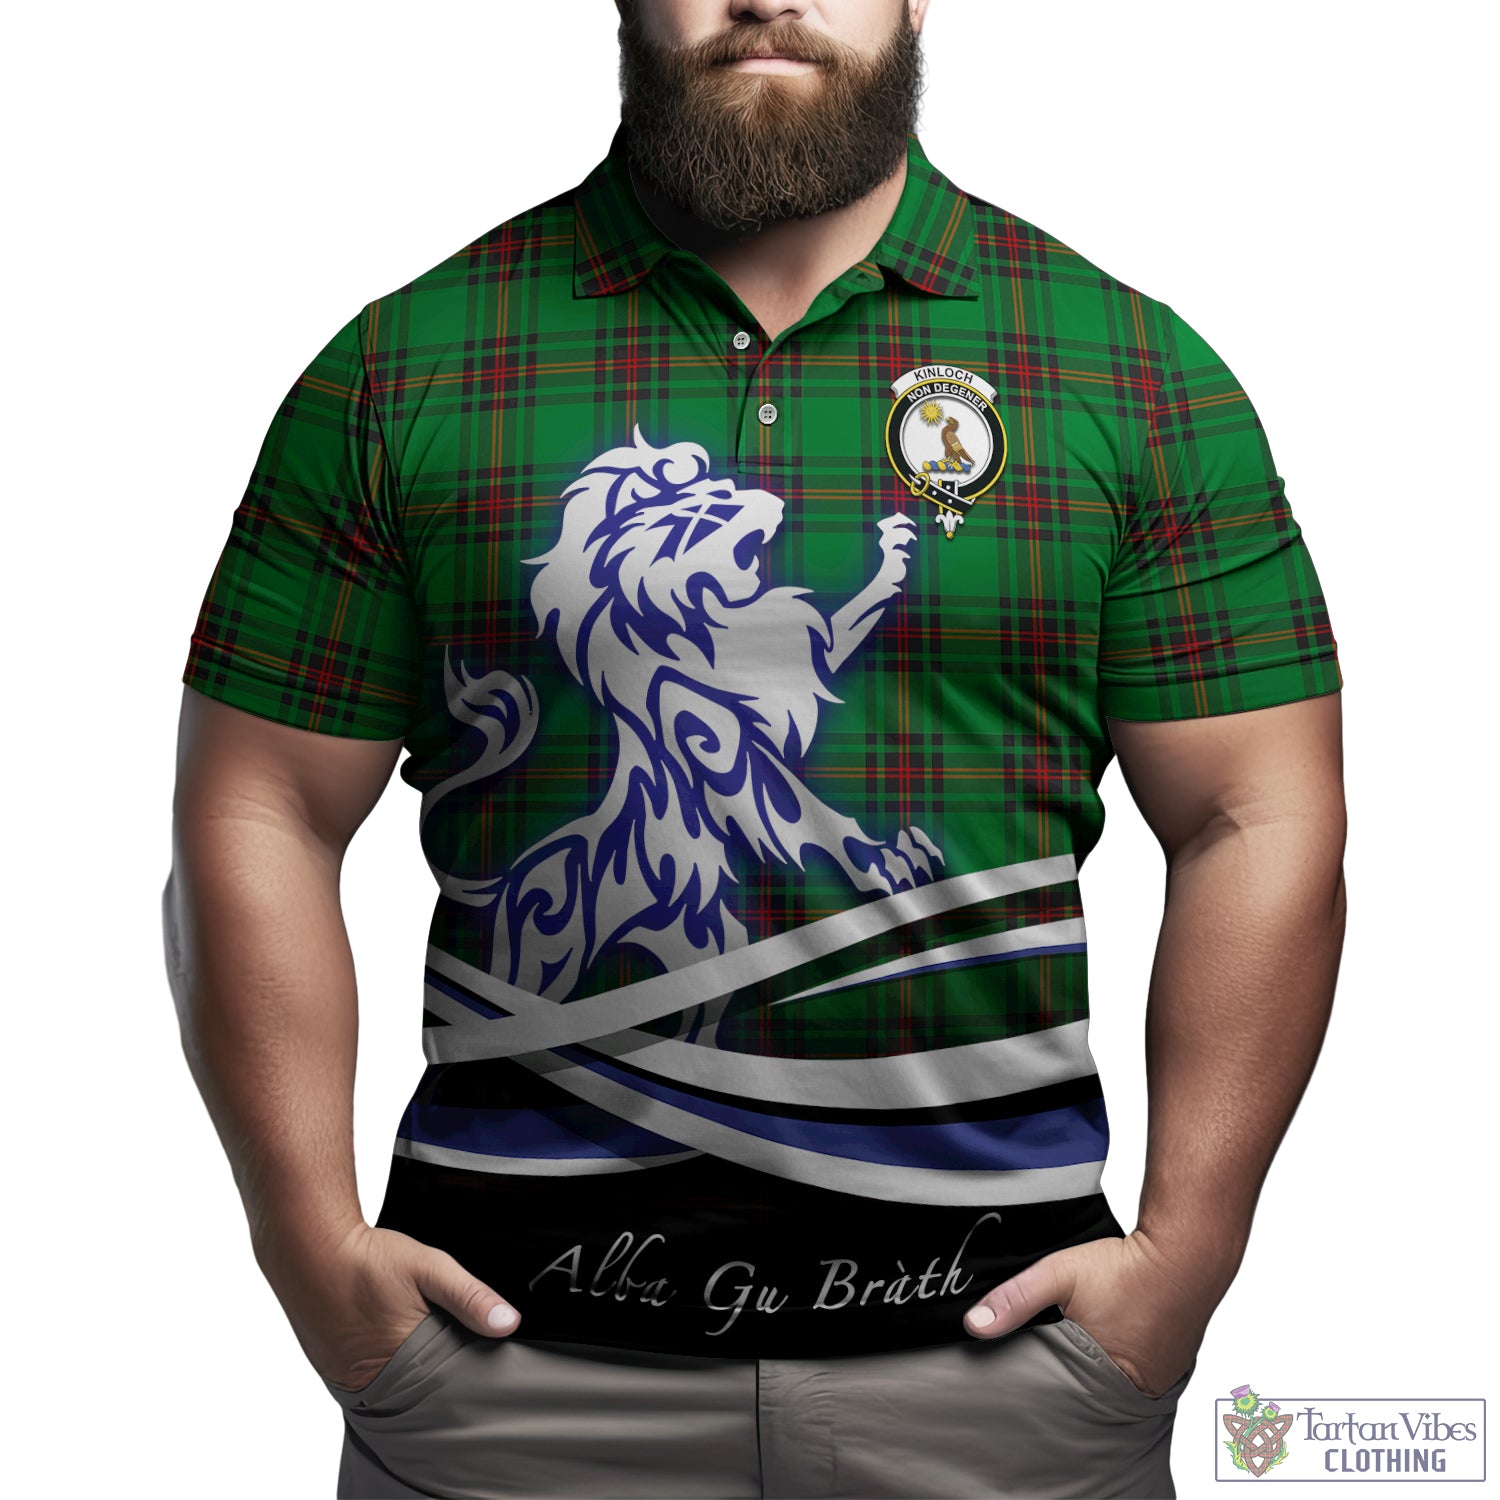 kinloch-tartan-polo-shirt-with-alba-gu-brath-regal-lion-emblem